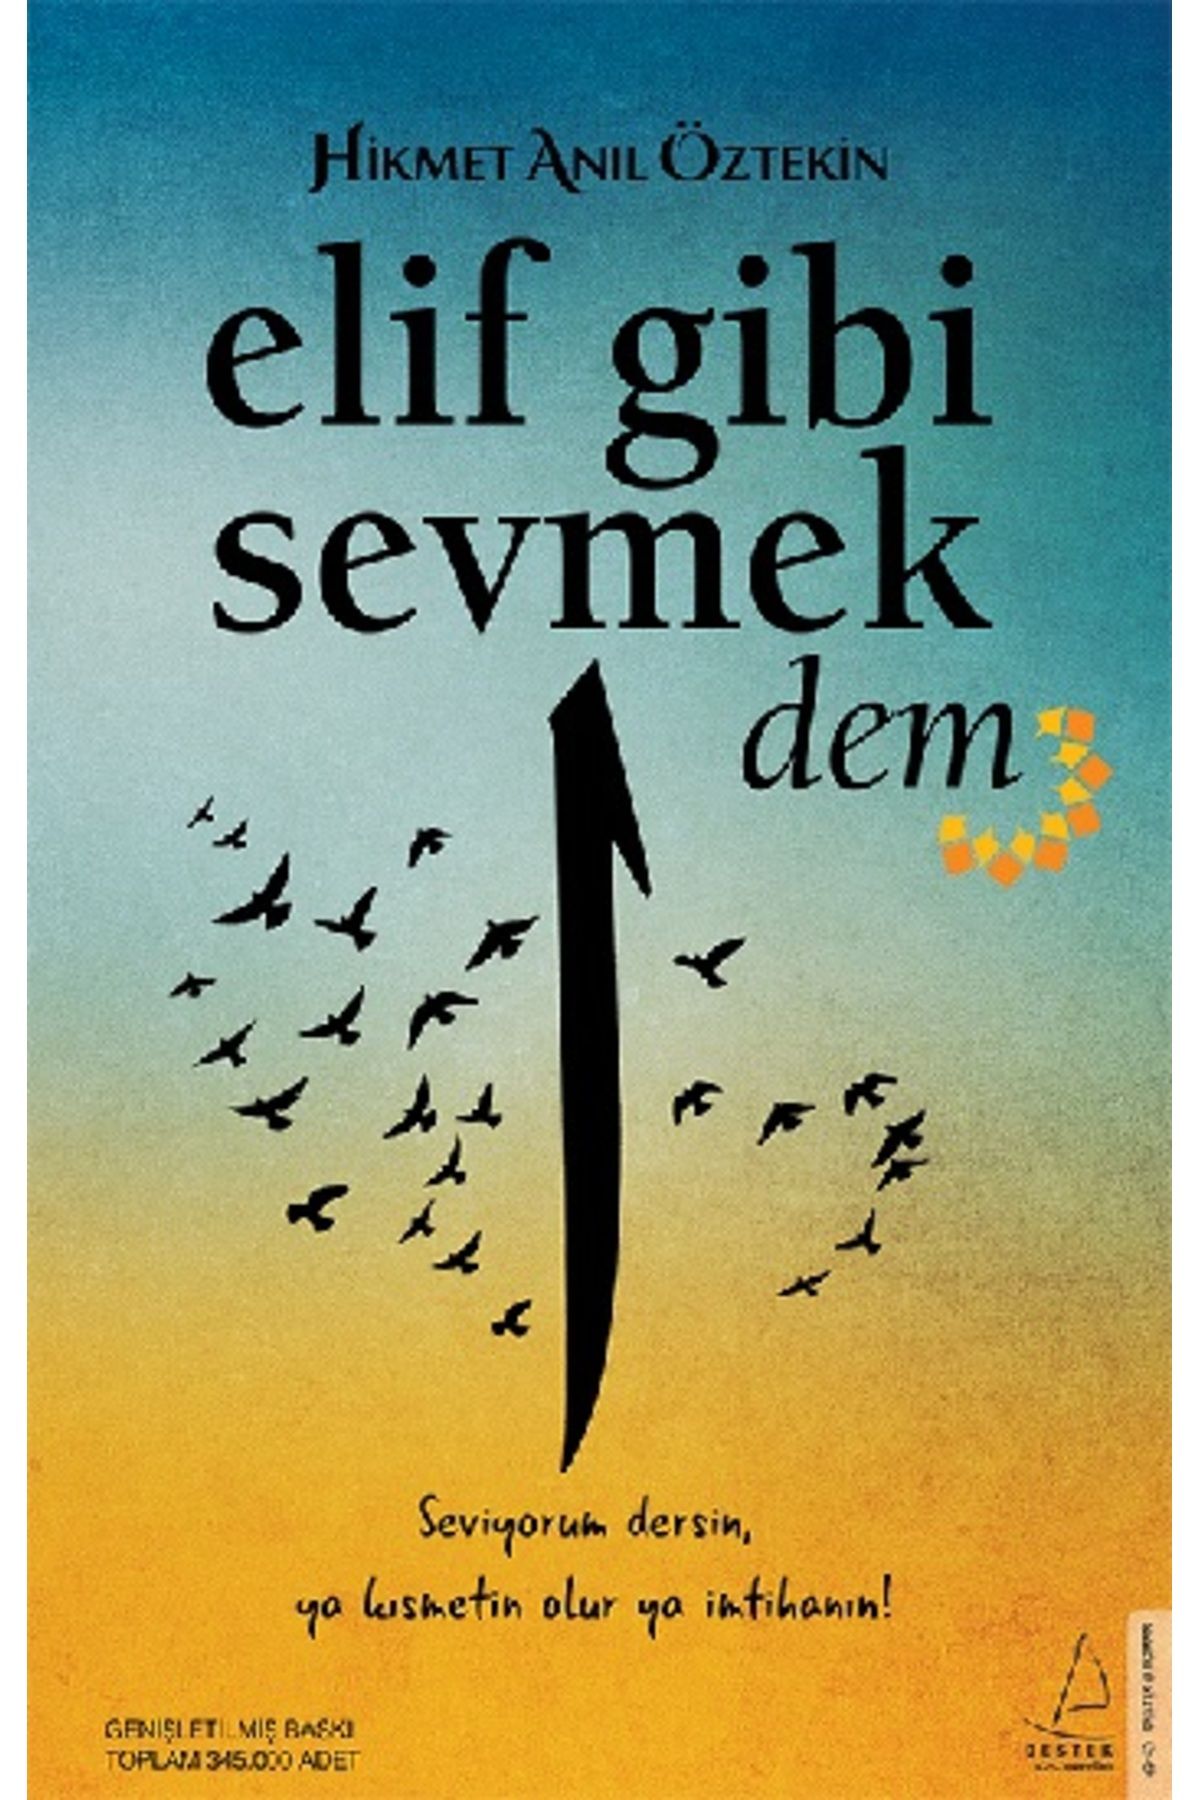 Destek Yayınları Elif Gibi Sevmek 2- Dem